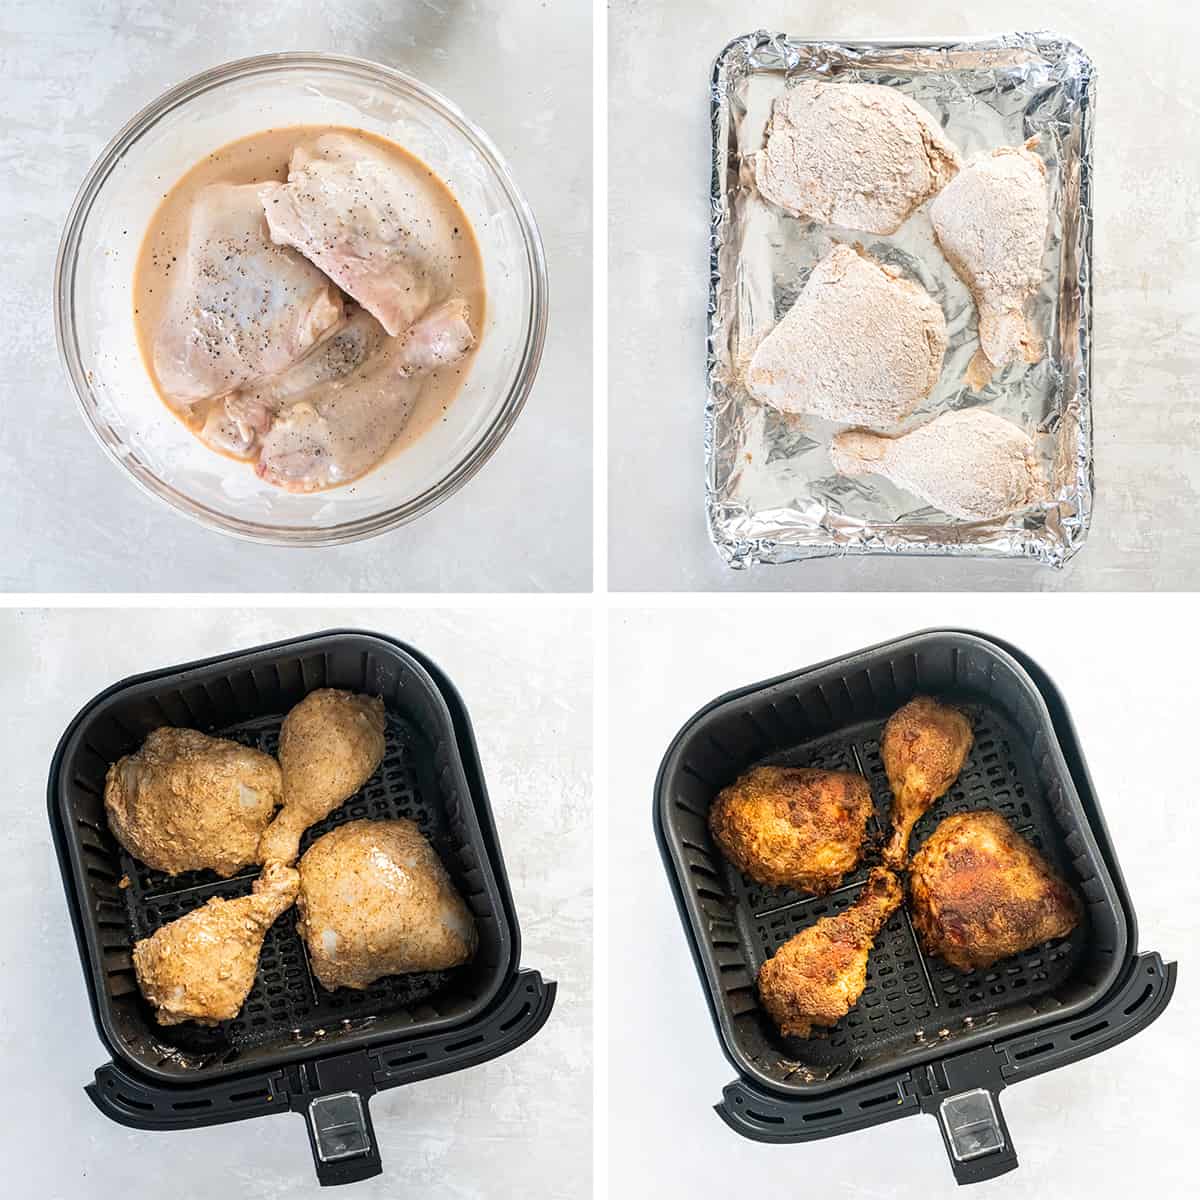 तले हुए चिकन को एयर फ्रायर में भिगोने, ब्रेड करने और पकाने की प्रक्रिया दिखाने वाली चार छवियां।